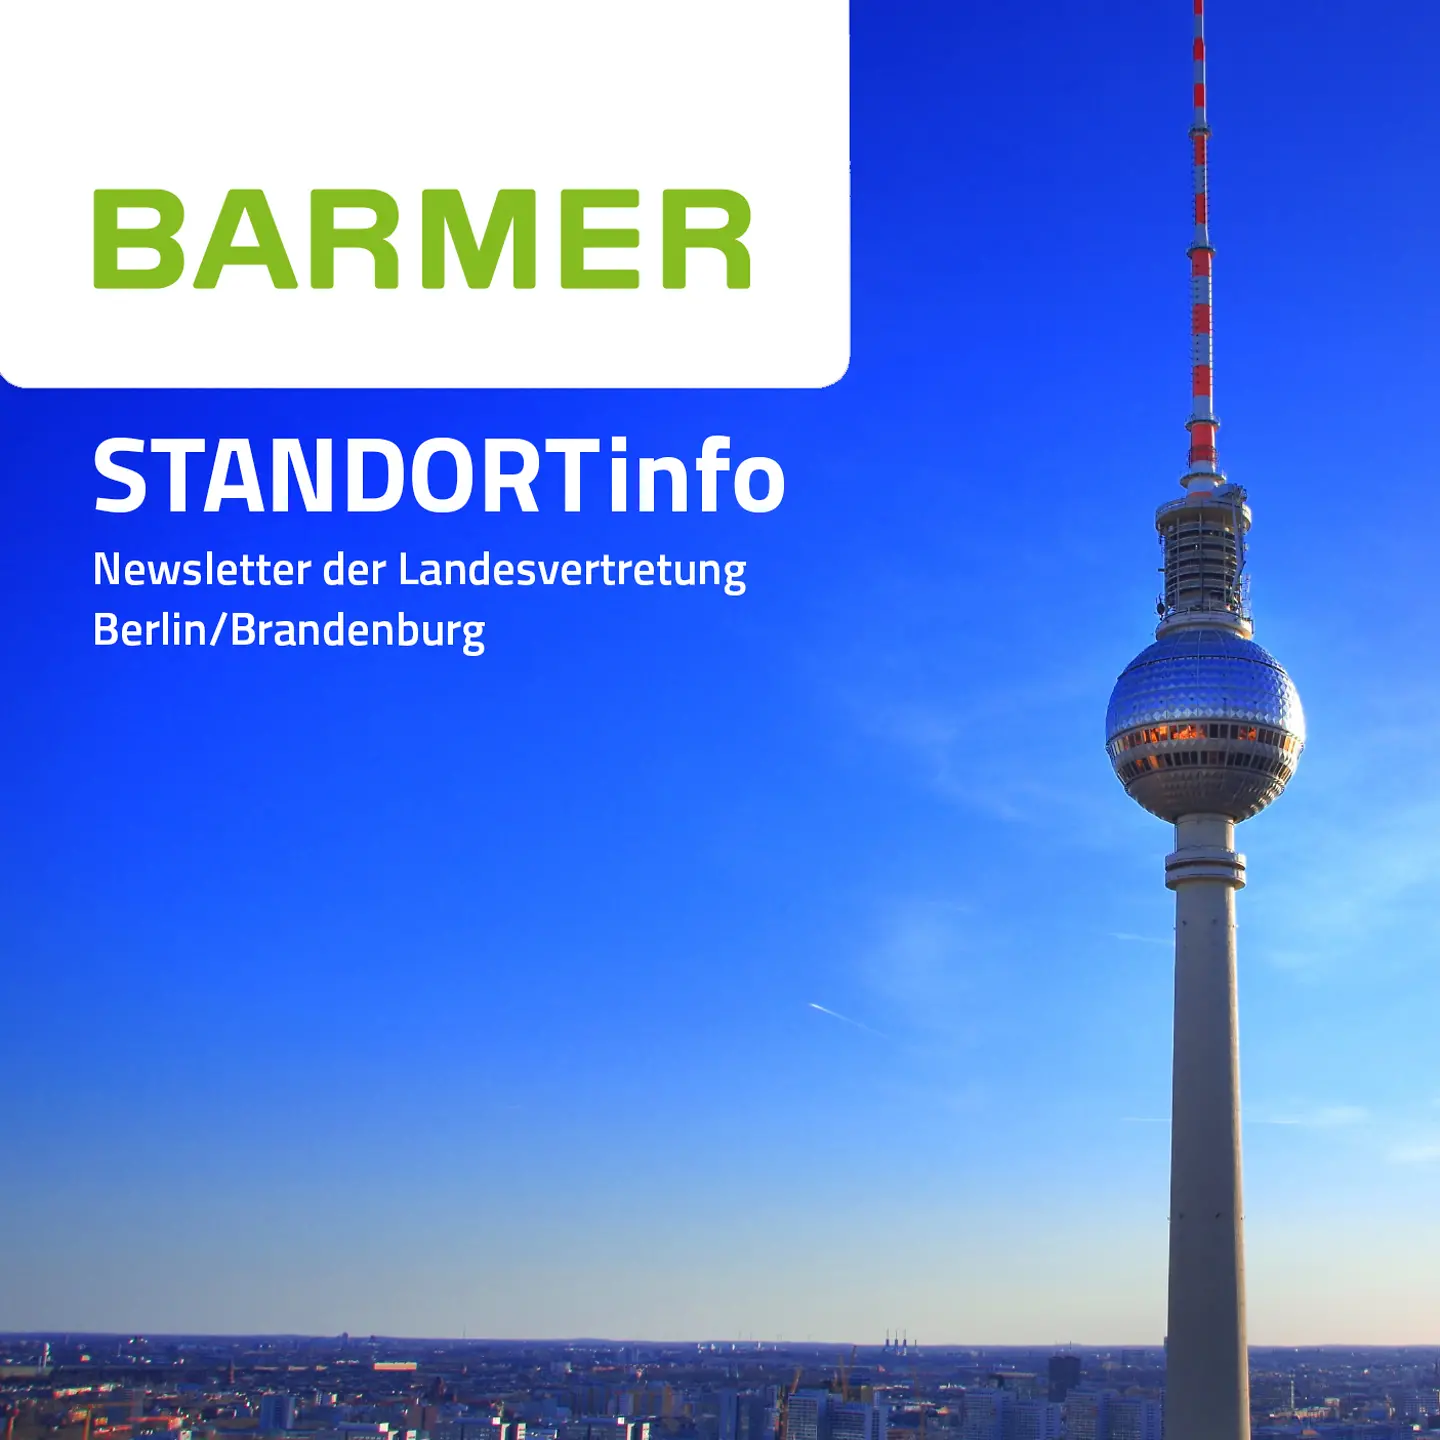 Das Titelbild der BARMER-Standortinfo zeigt den Berliner Fernsehturm im Sonnenaufgang